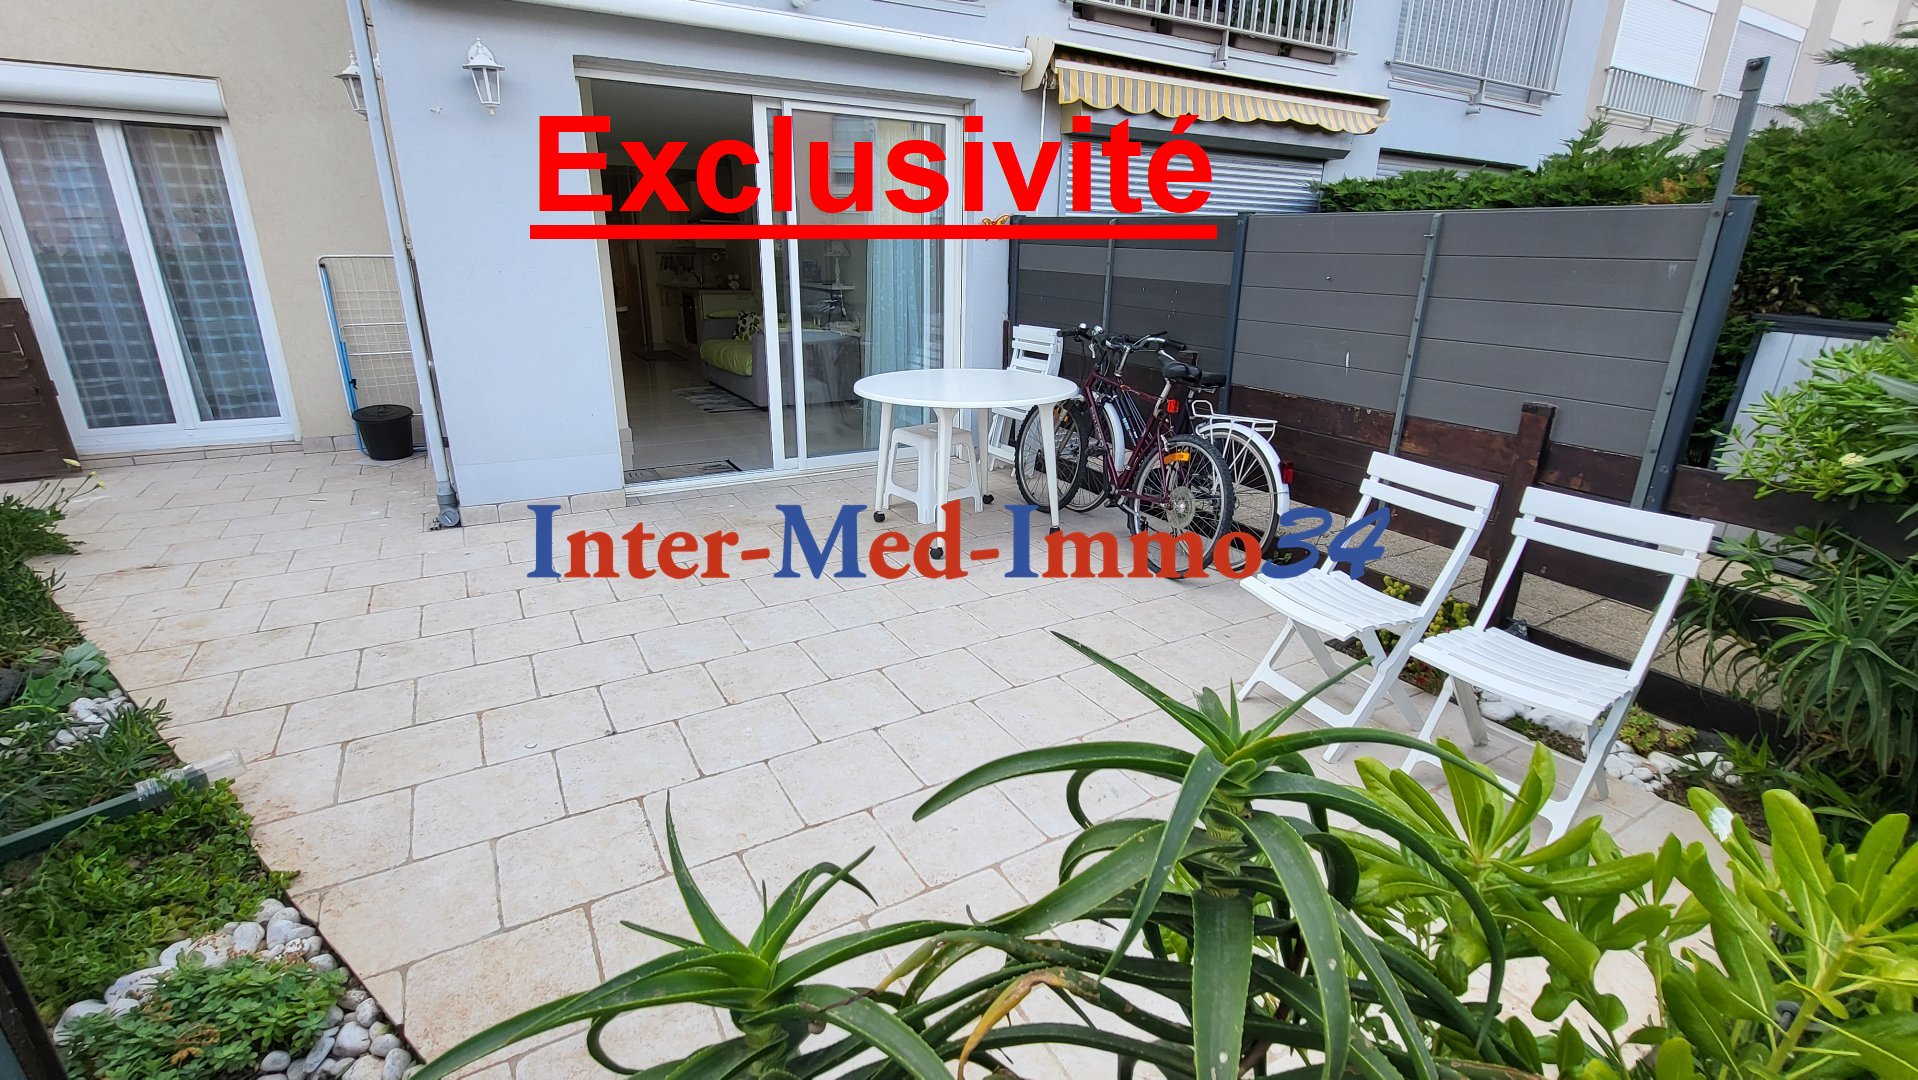 Agence immobilière de Inter-Med-Immo34  agence d'Agde